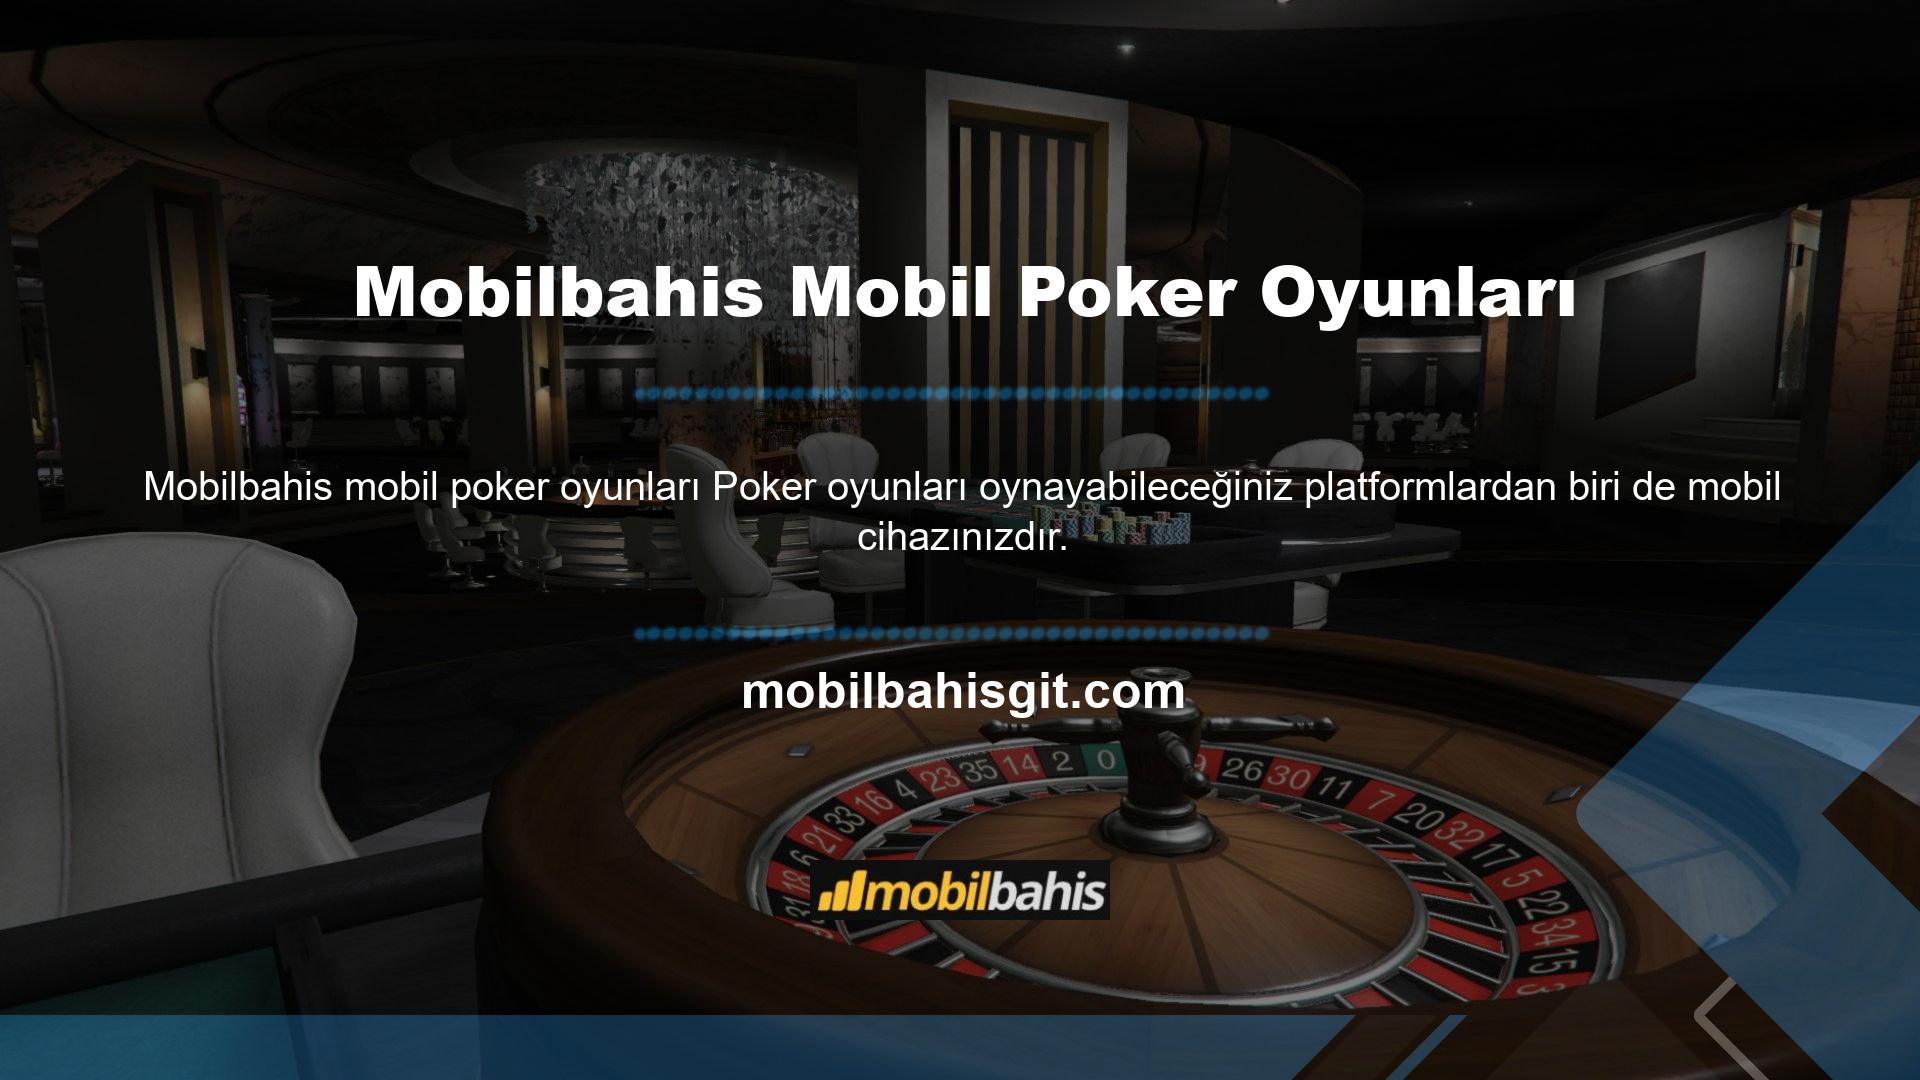 Mobilbahis çeşitli tasarlanmış poker oyunlarının çoğu, çok yüksek performansla mobil olarak oynanabilir